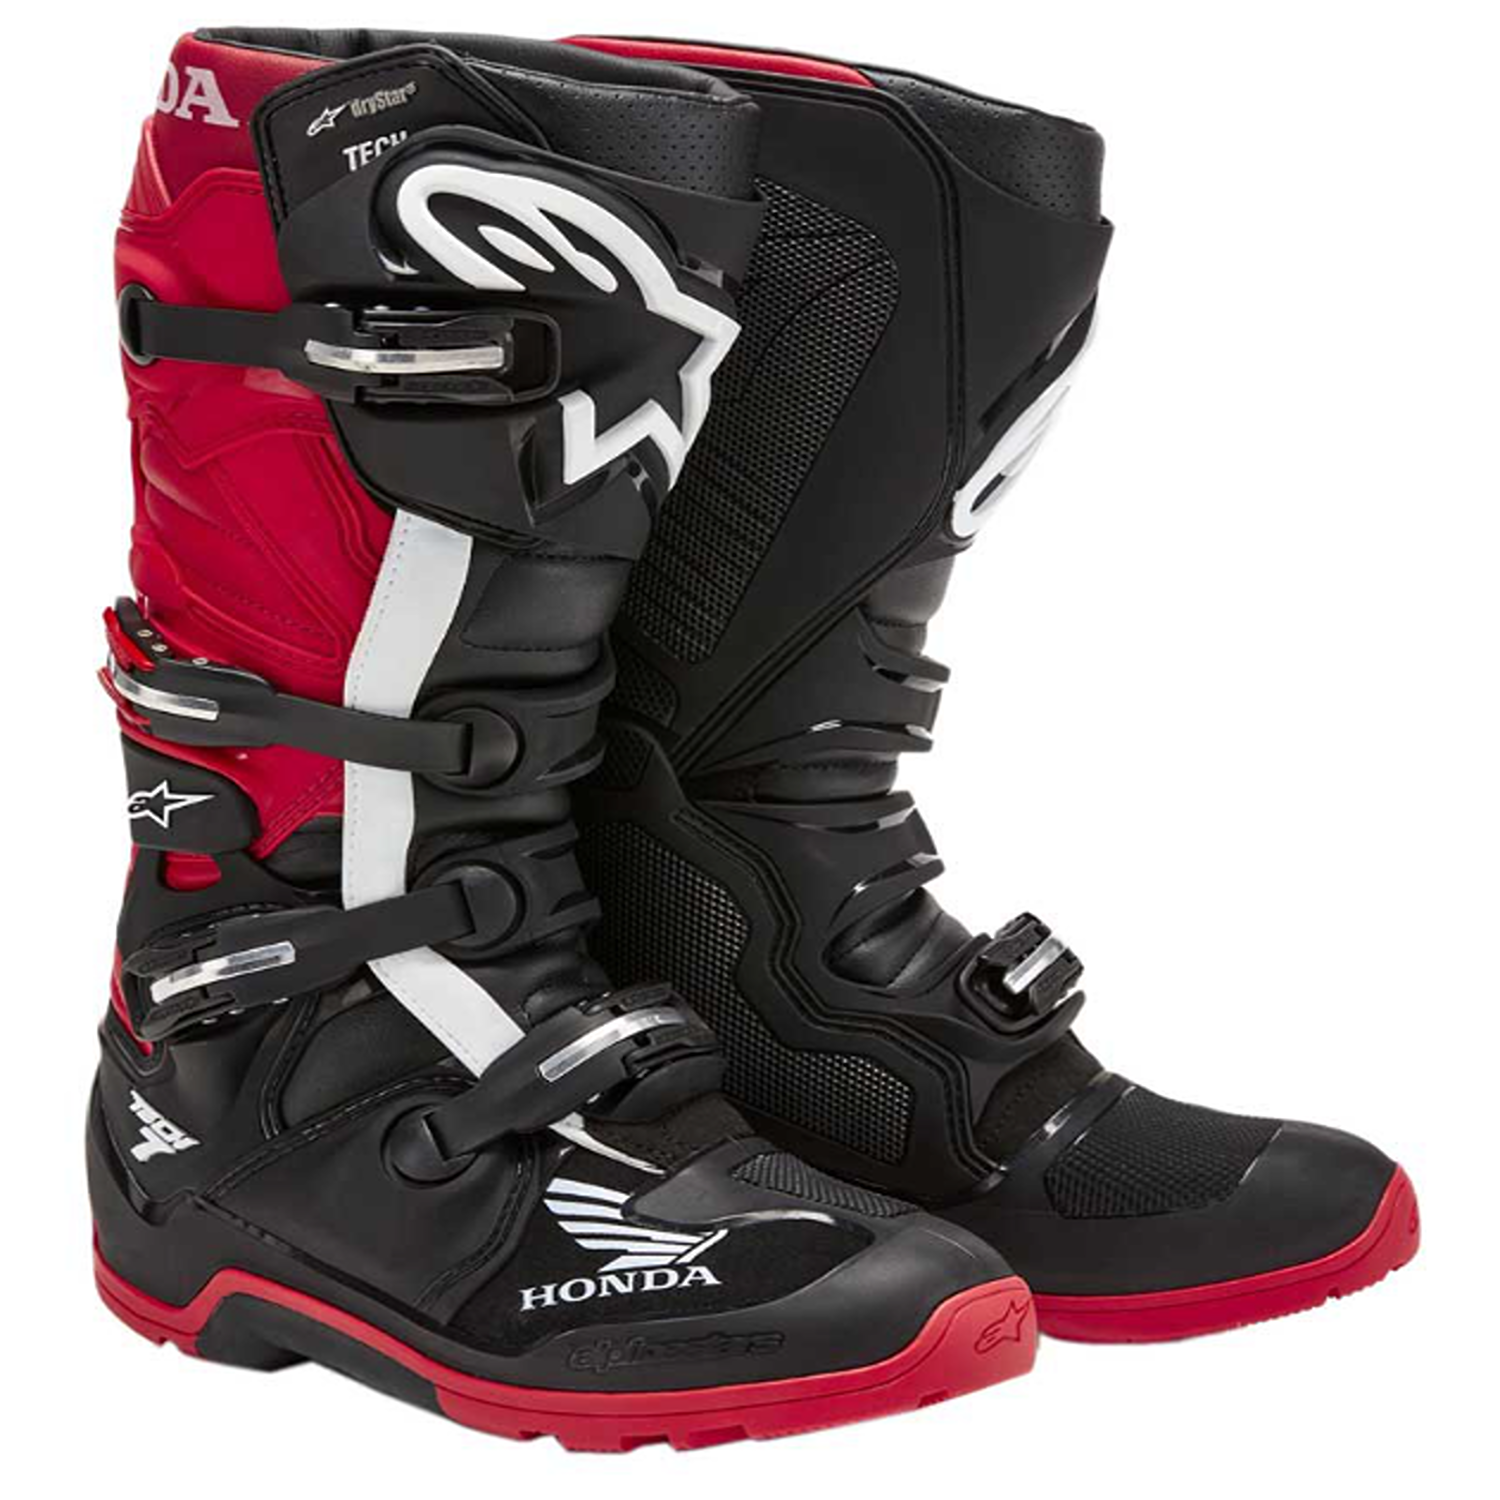 Image of Alpinestars Honda Tech 7 Enduro Drystar Boots Black Bright Red Size US 10 EN